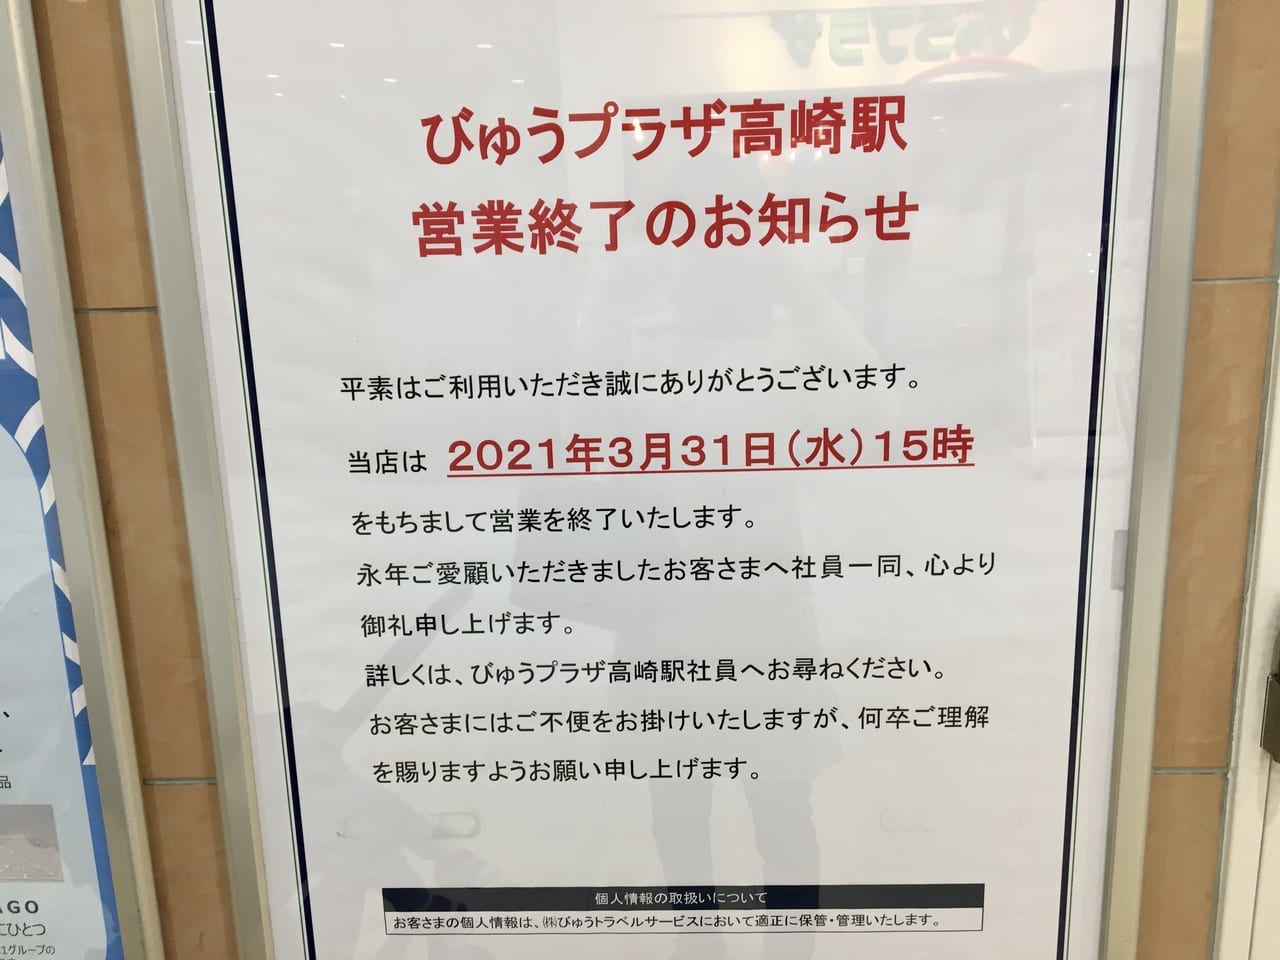 JR高崎駅の「びゅうプラザ」営業終了のお知らせ